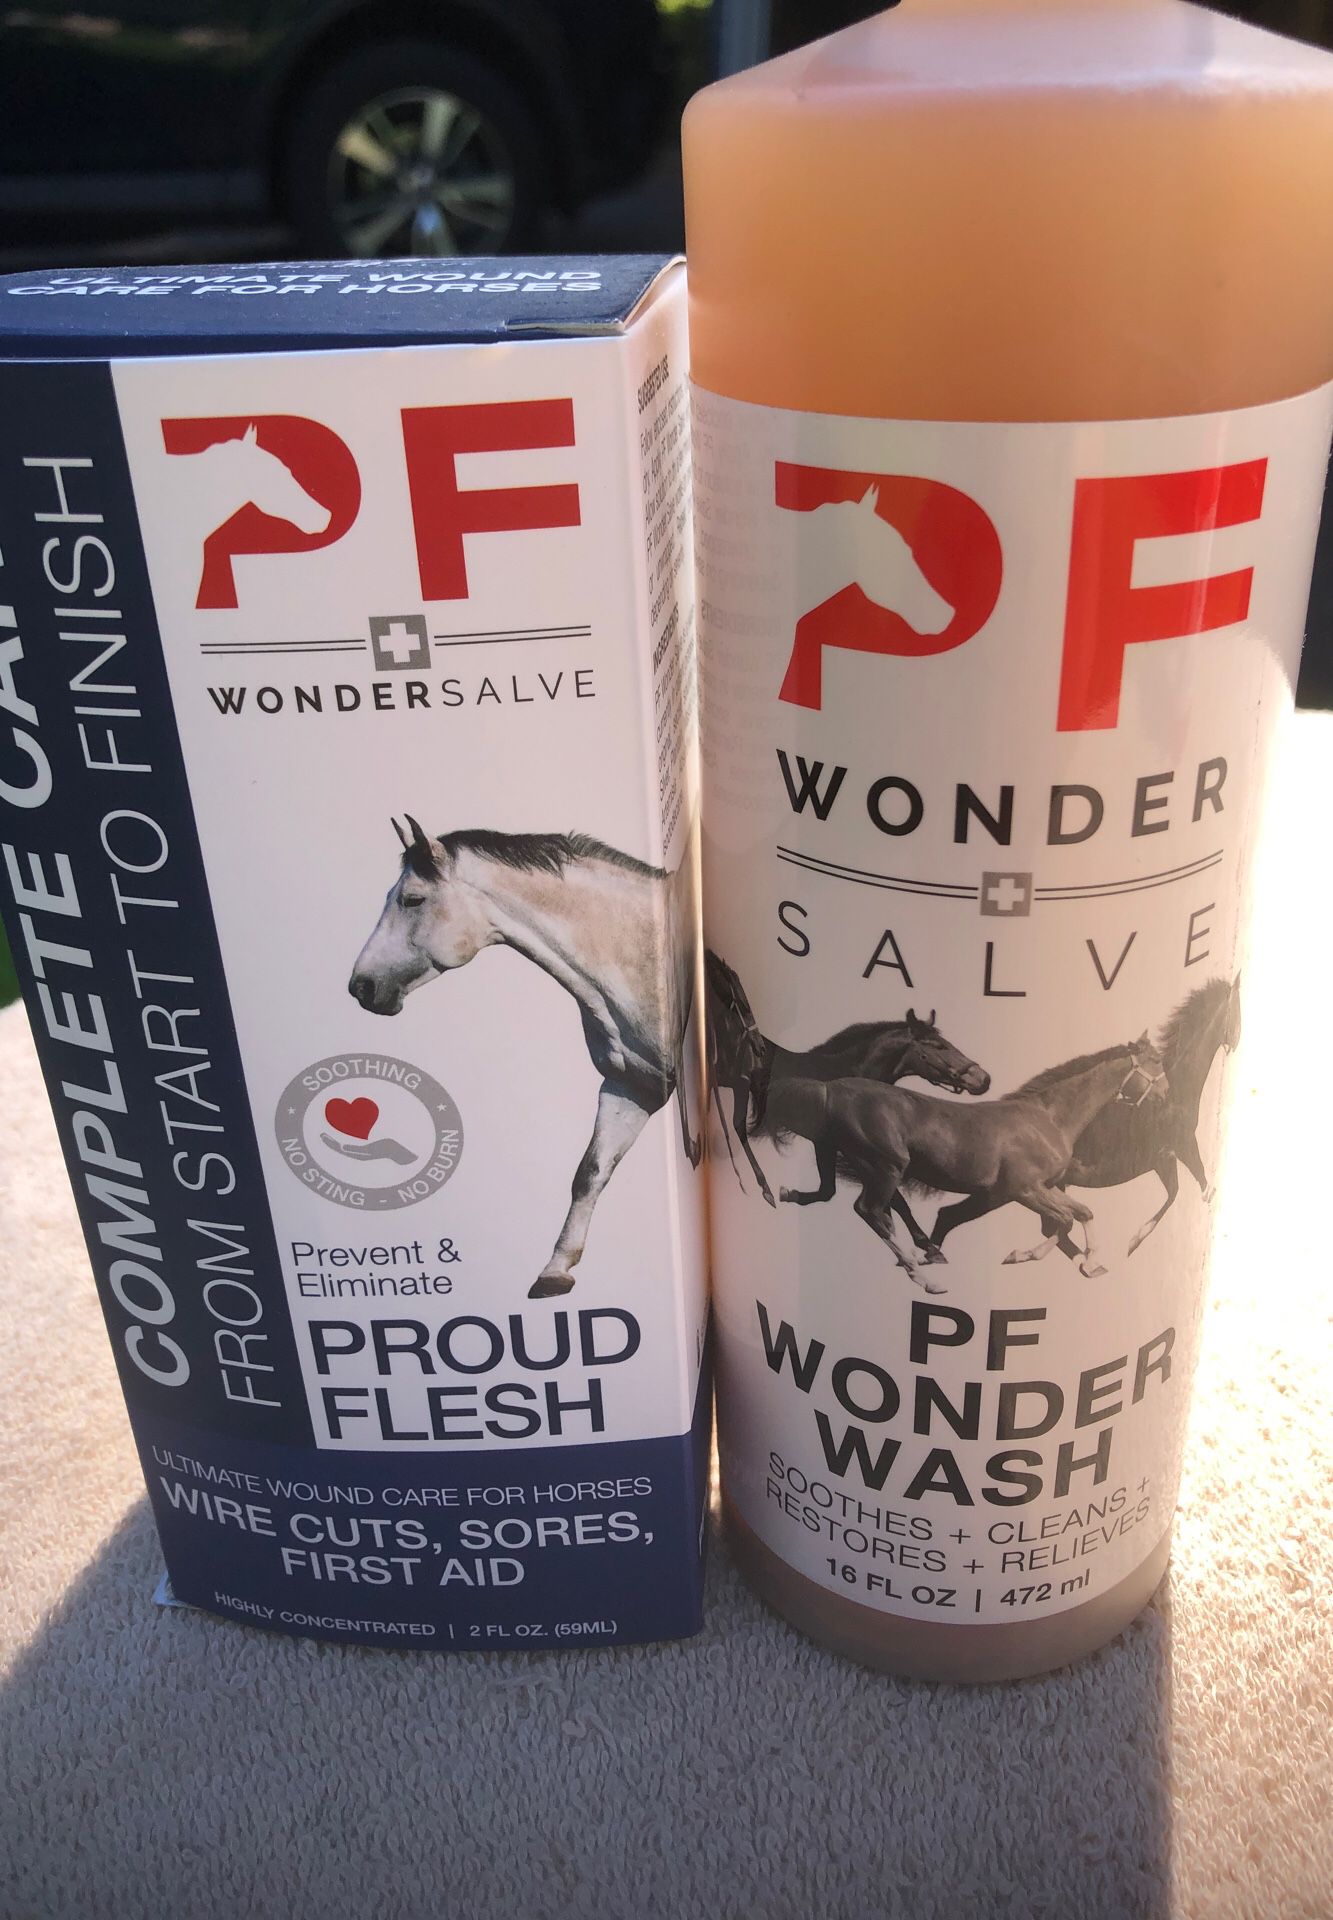 Horse wound care/ Wonder wash